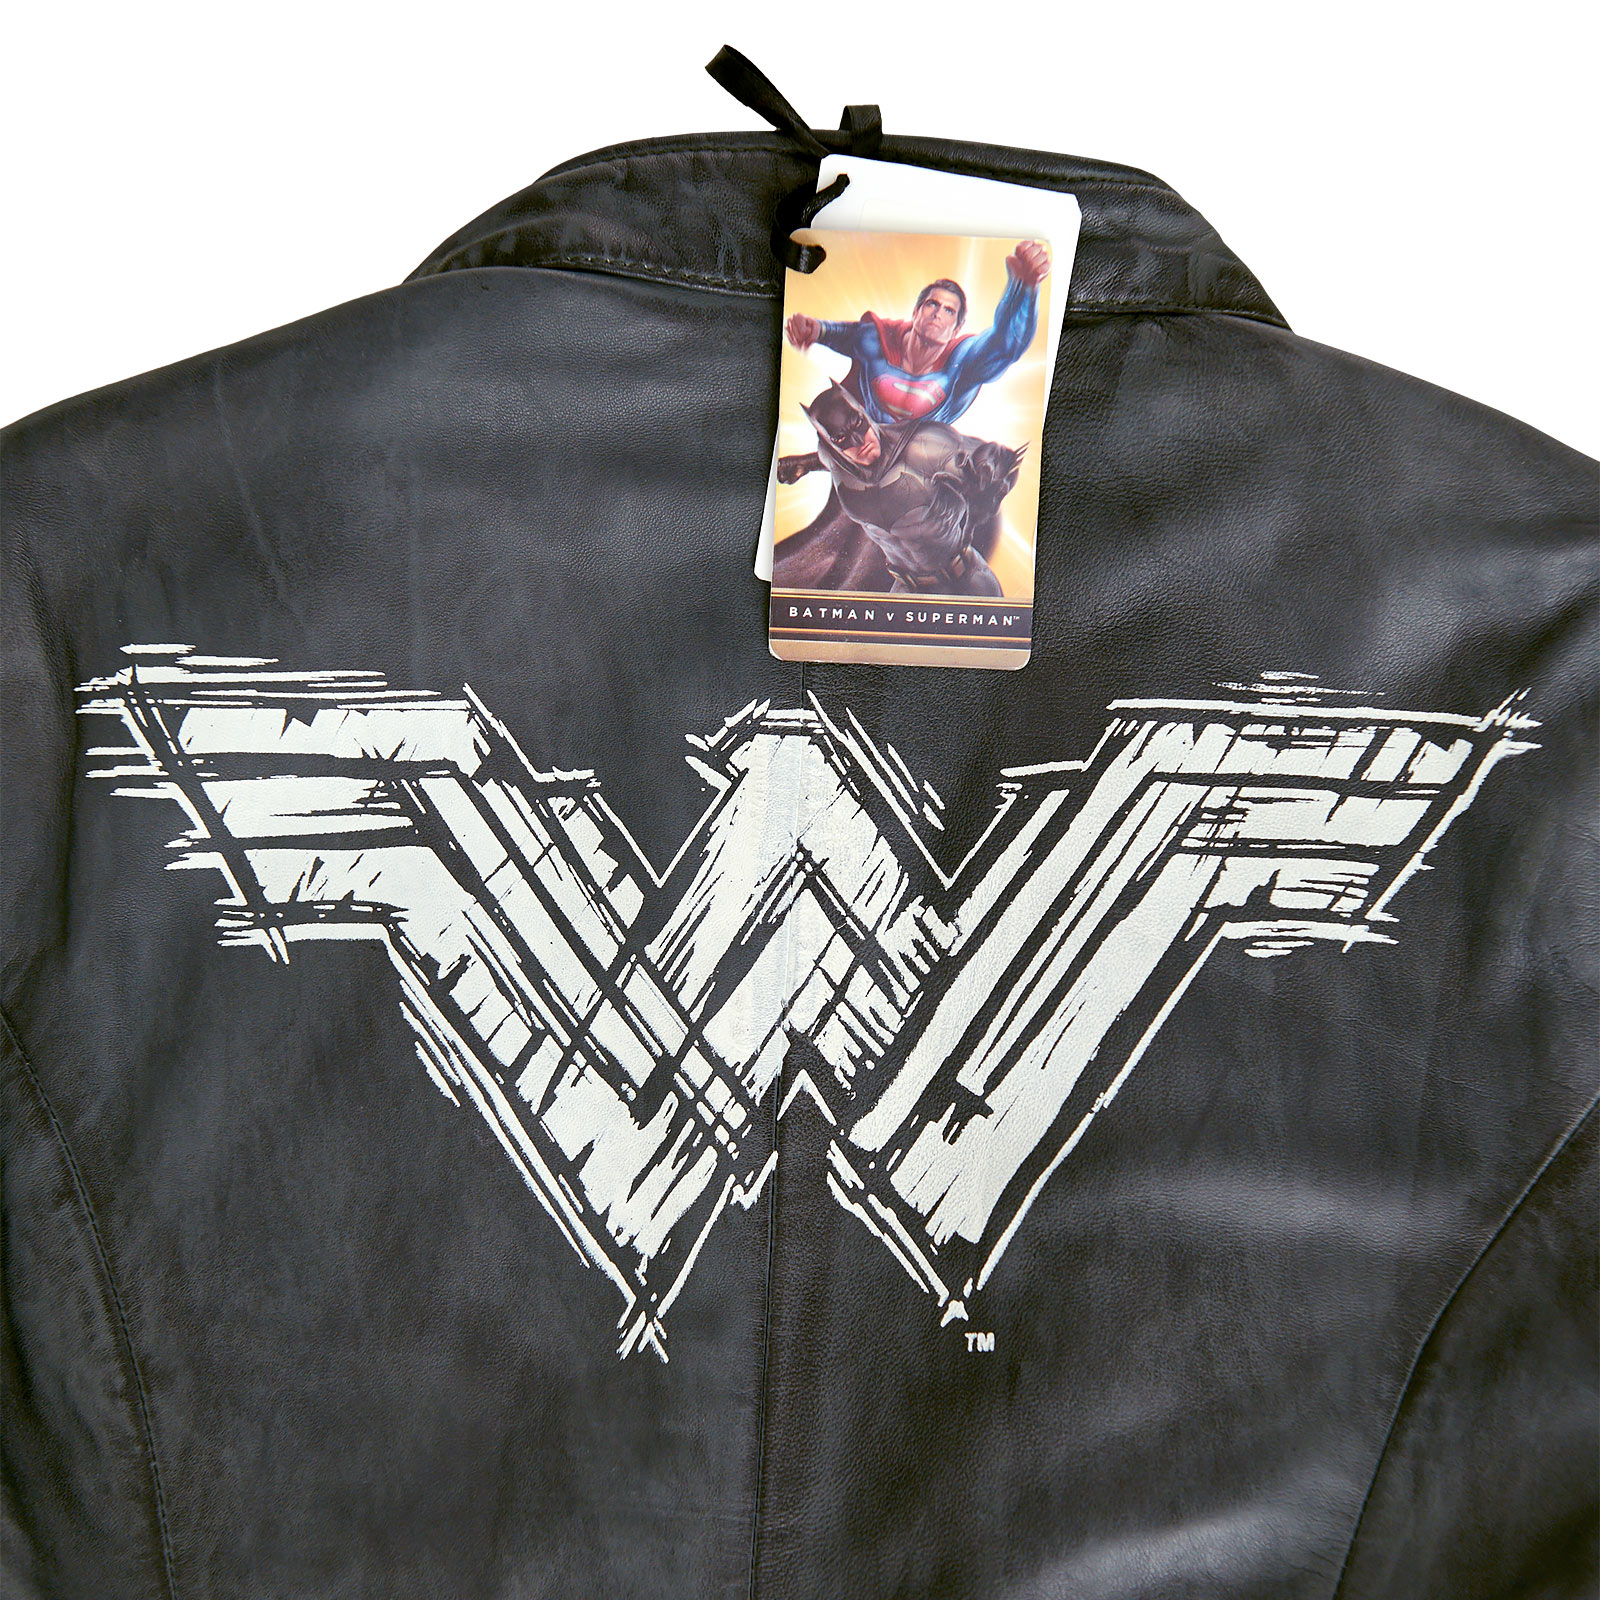 Wonder Woman - Veste en cuir logo gris